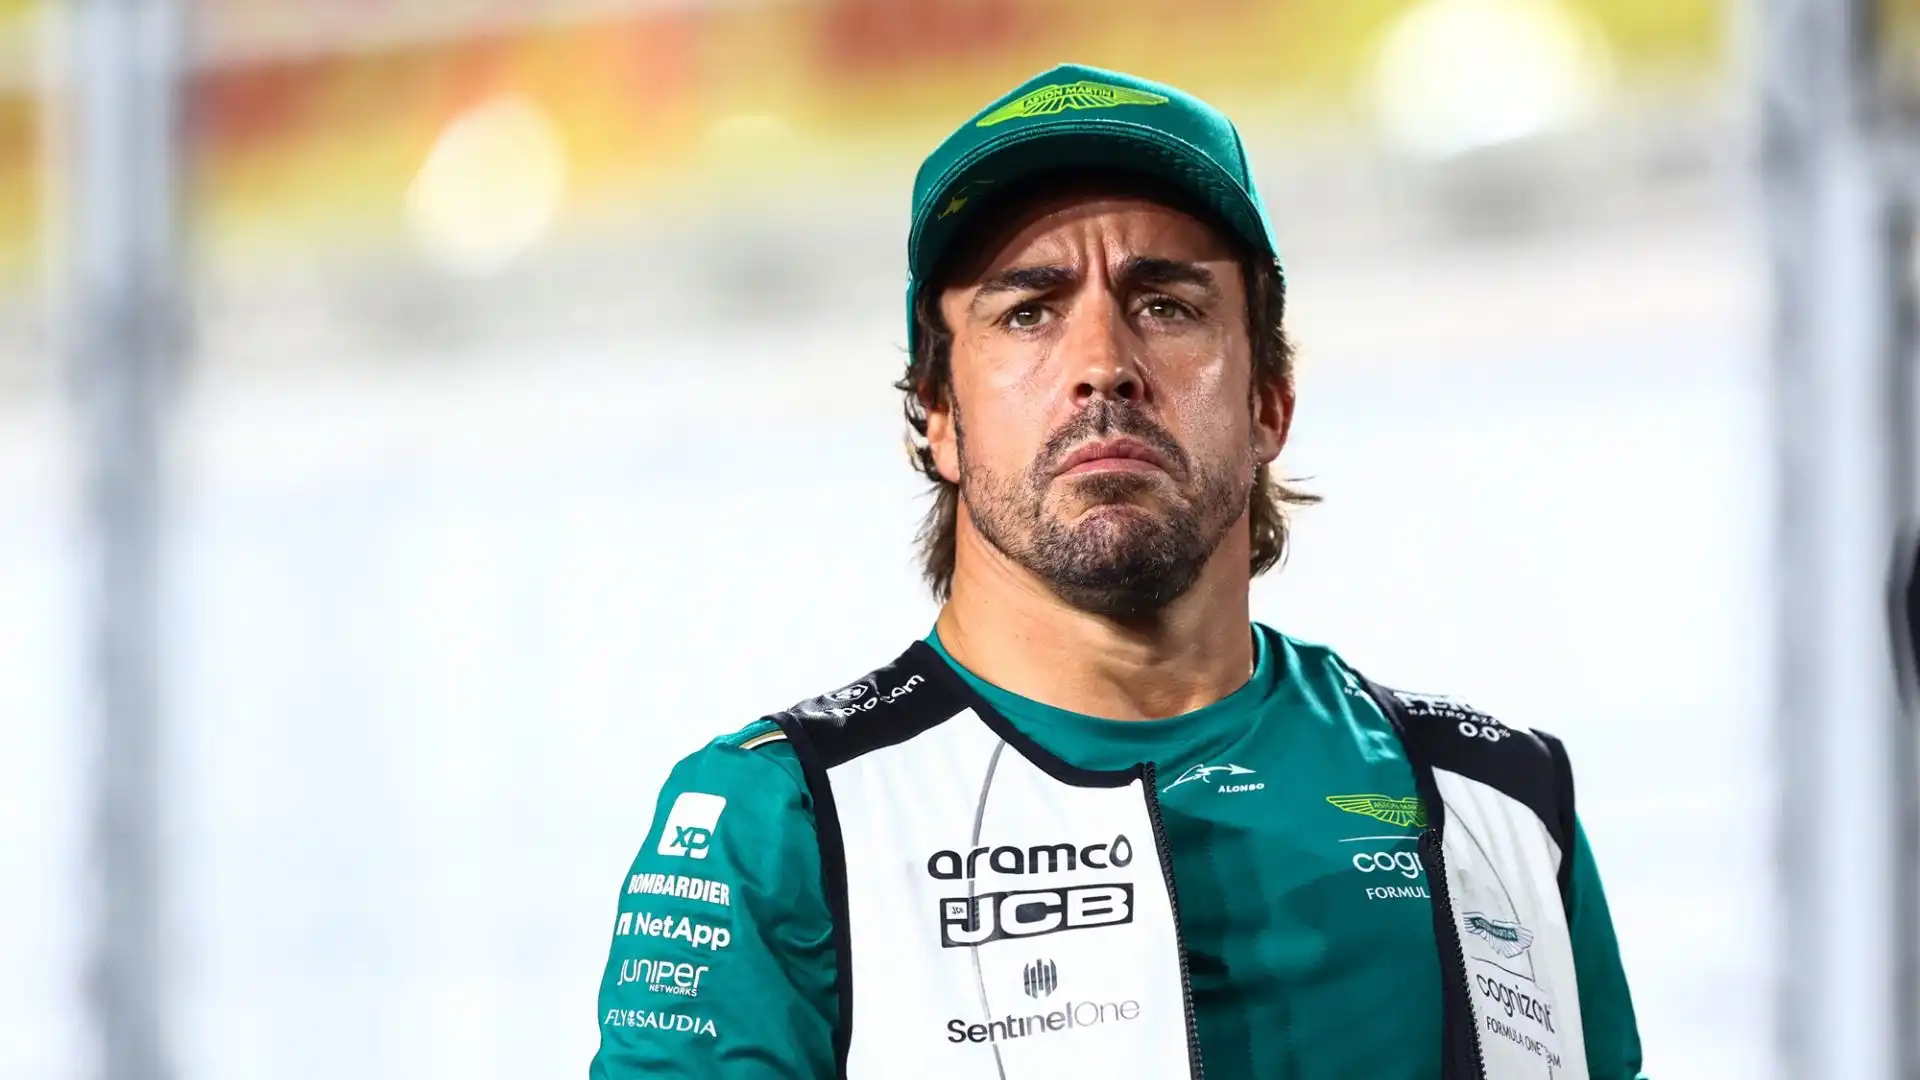 Il pilota veterano, a 24 anni dal suo esordio in Formula 1, è stato indicato da molti come possibile successore di Lewis Hamilton alla Mercedes nel 2025